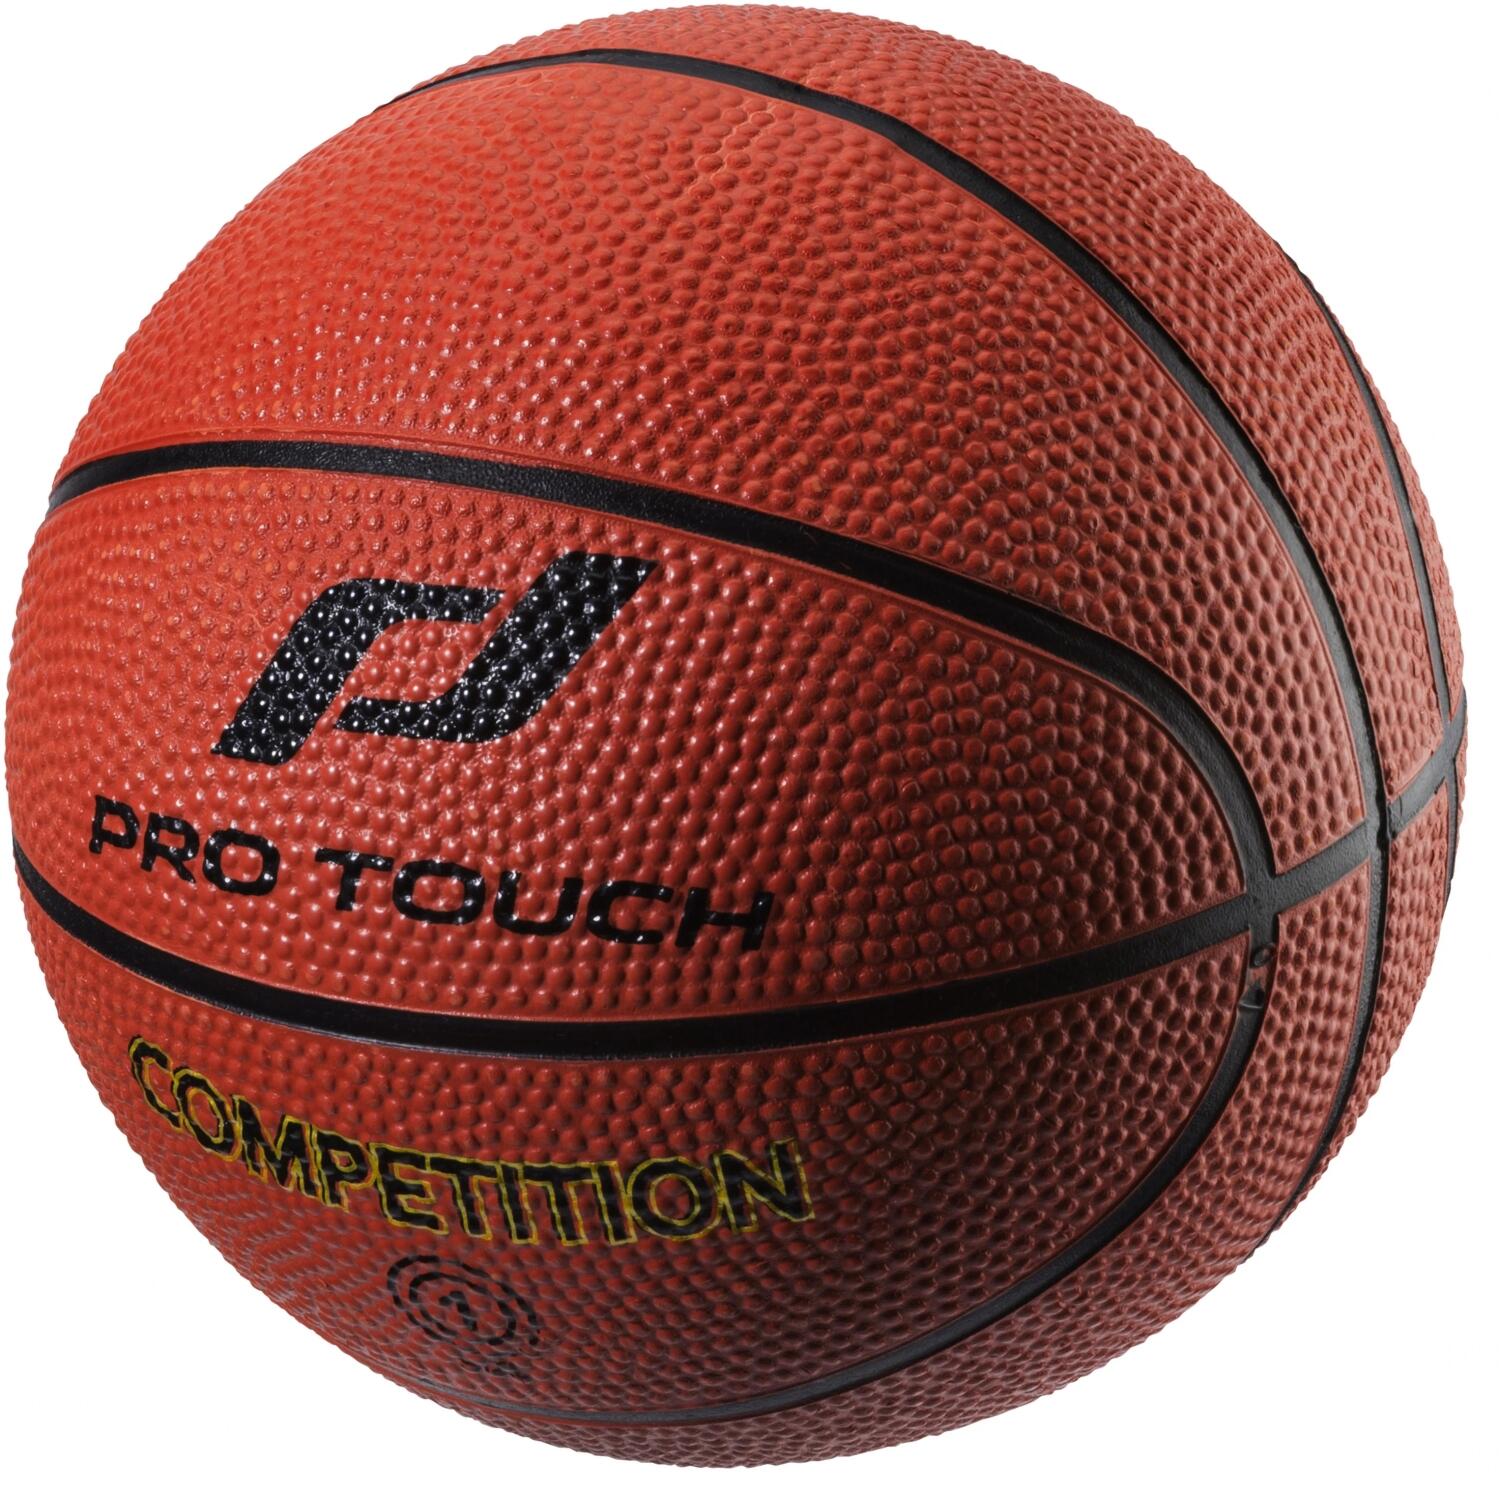 Pro Touch Mini Basketball